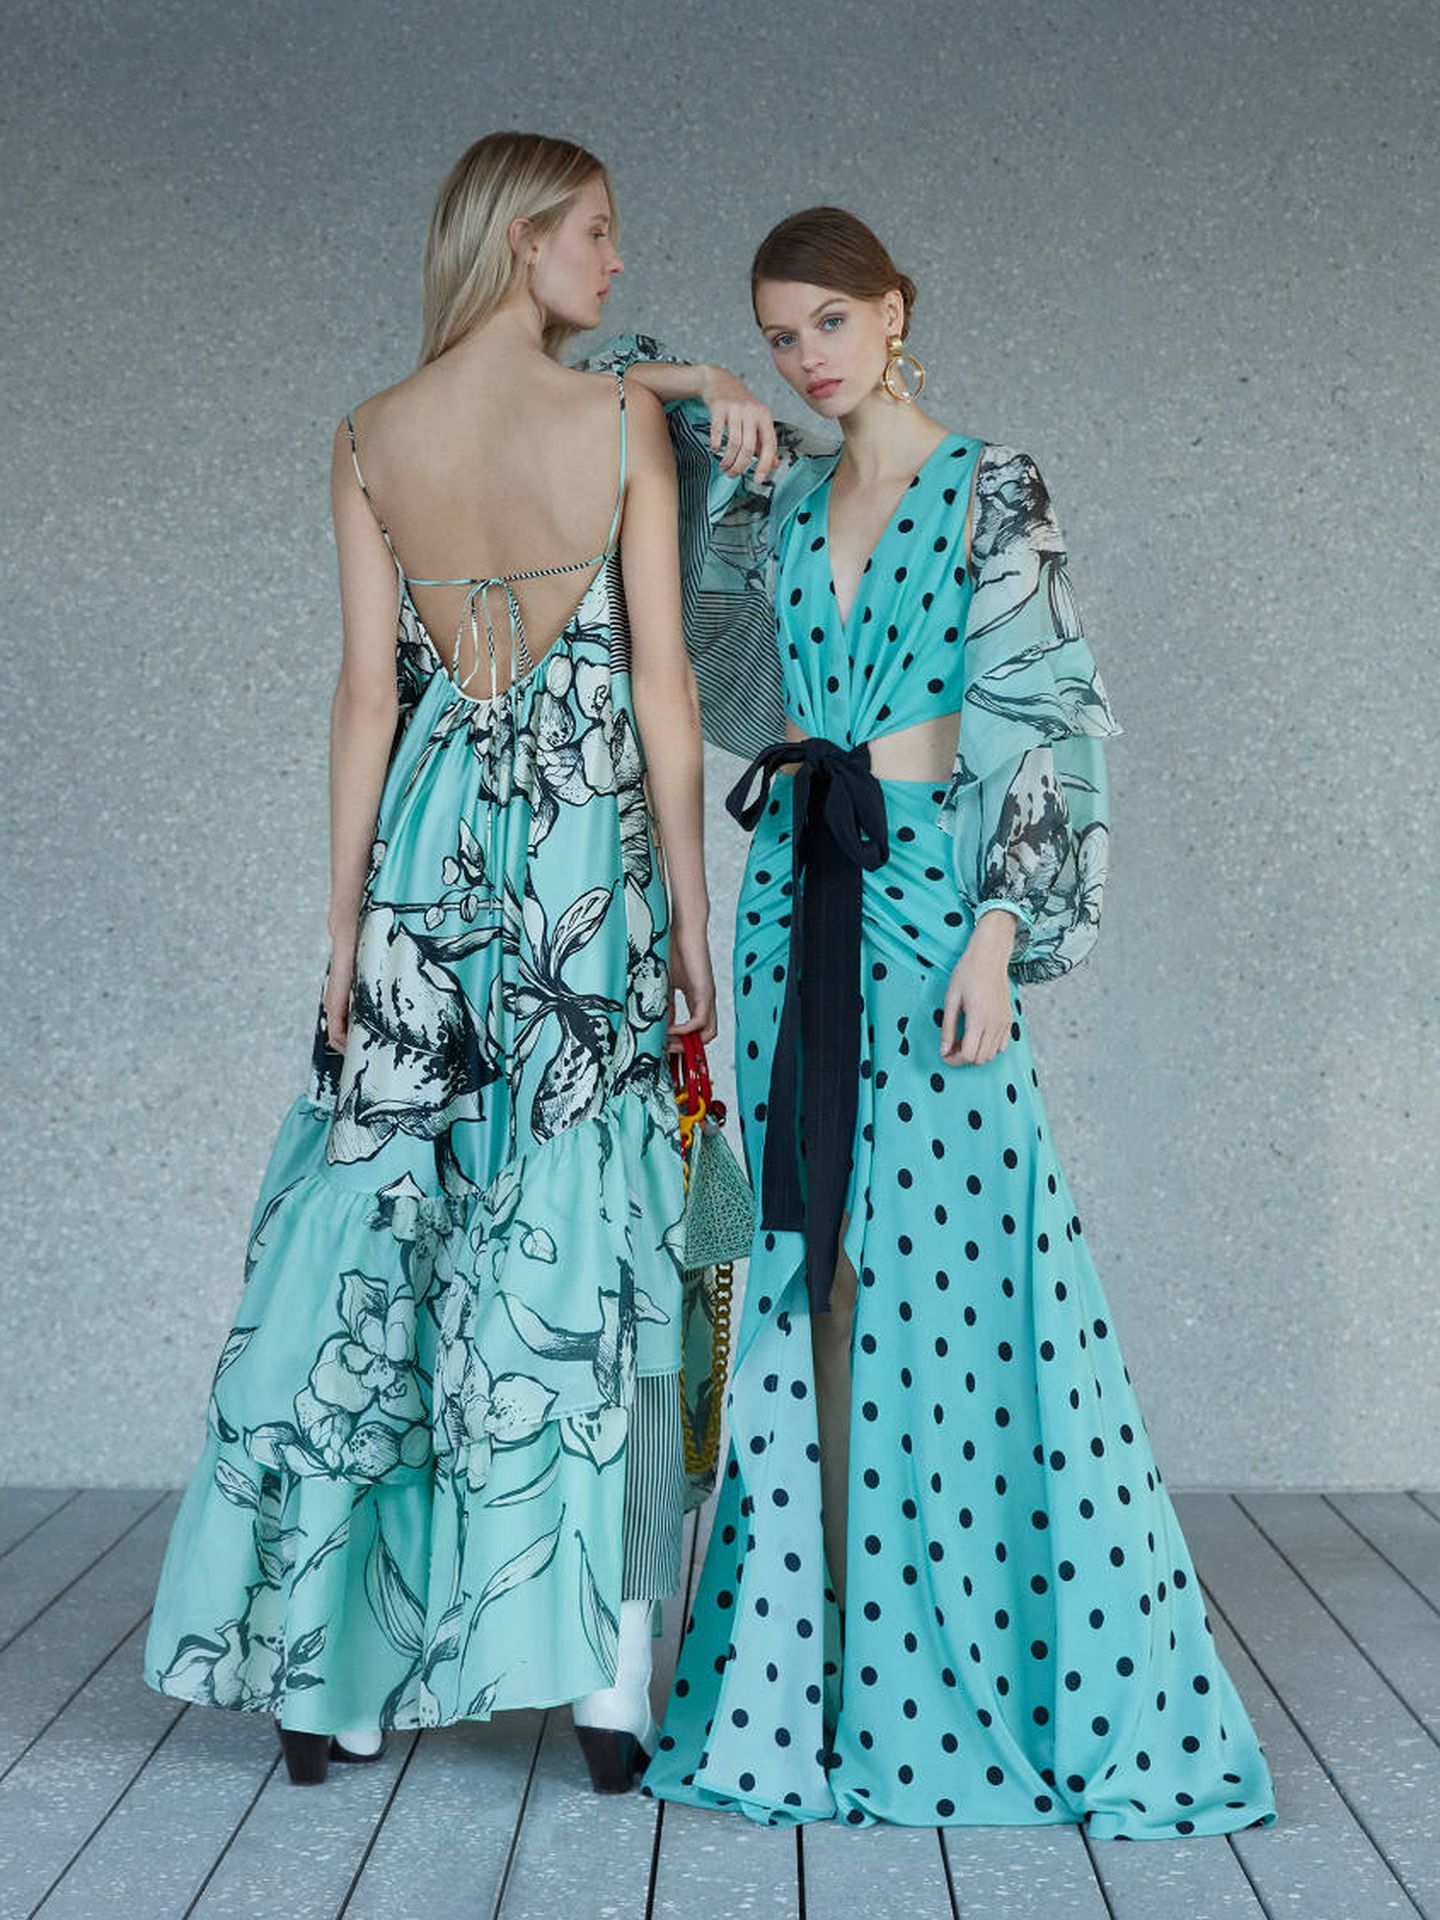 La modelo de la derecha lleva el vestido que luce Nieves valorado en 1.800 euros.  (Cortesía)